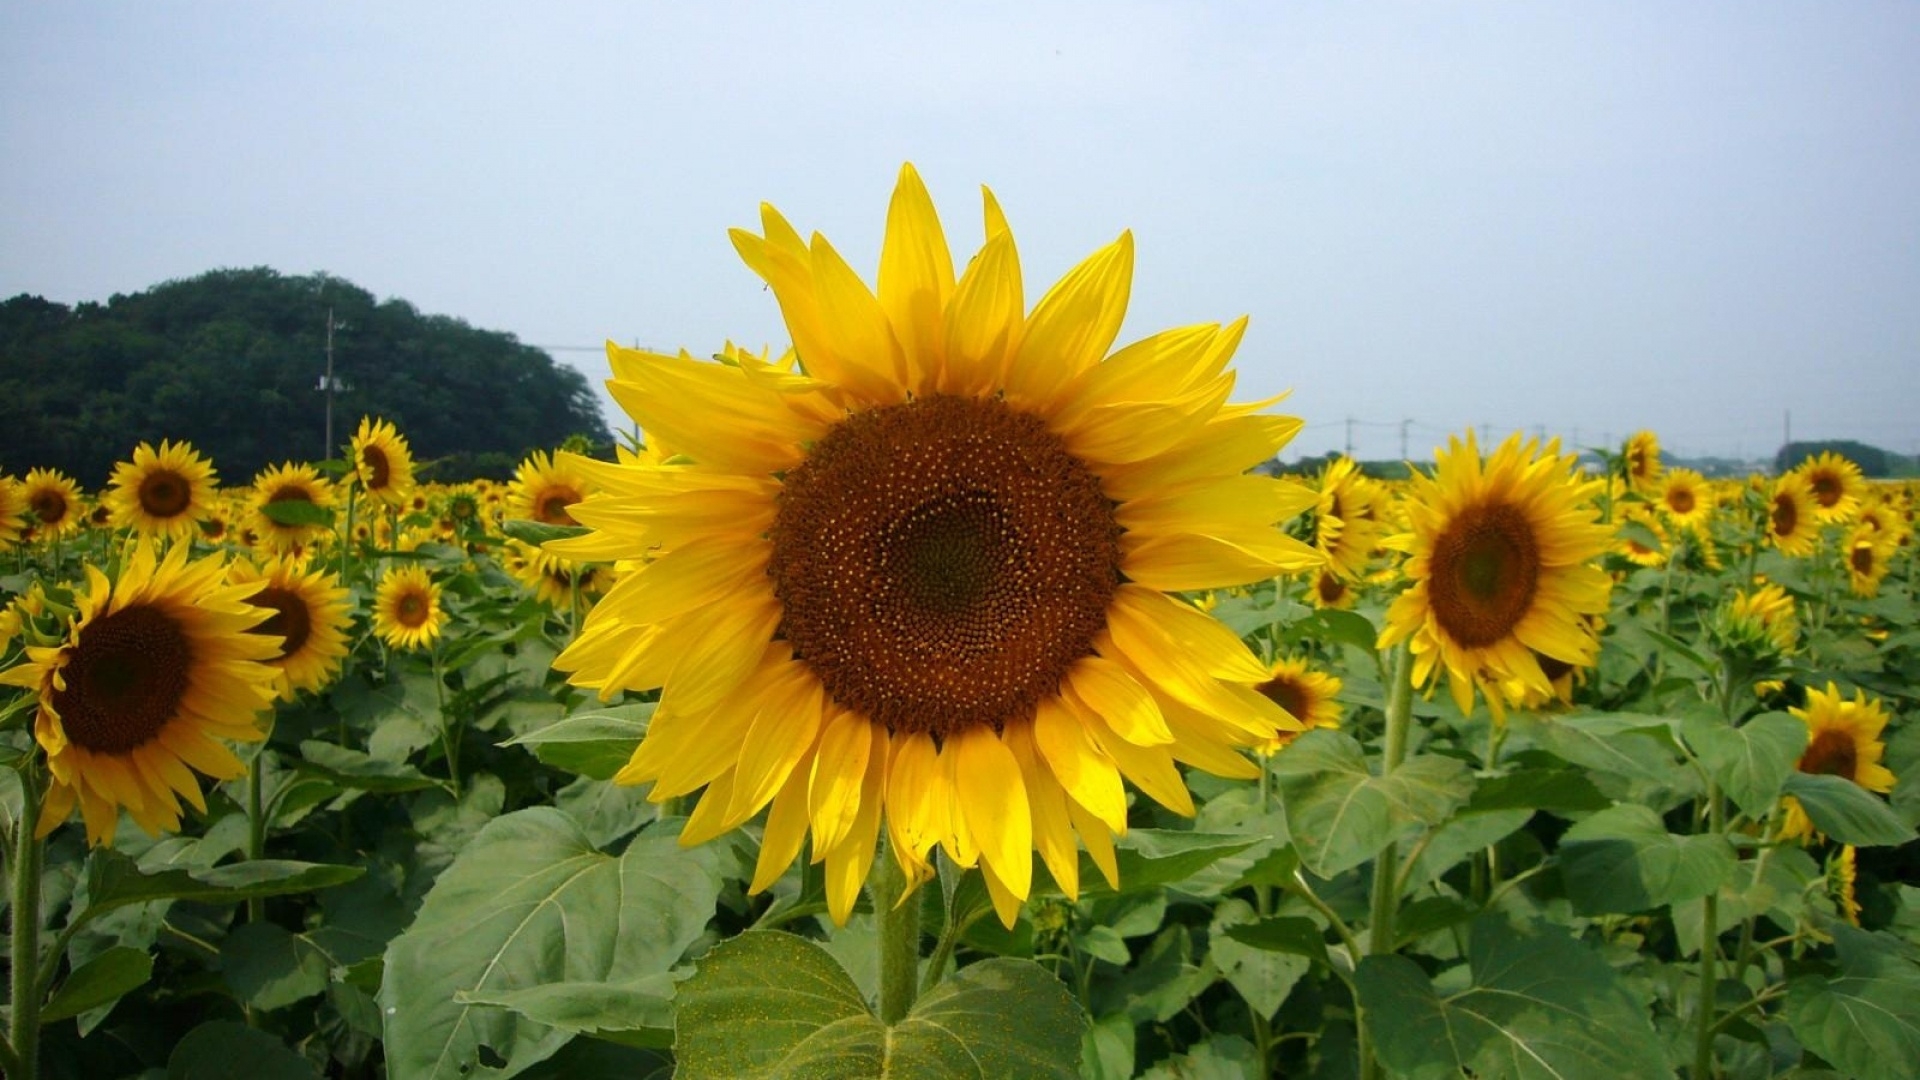 高清晰可爱的向日葵太阳花壁纸 欧莱凯设计网 08php Com